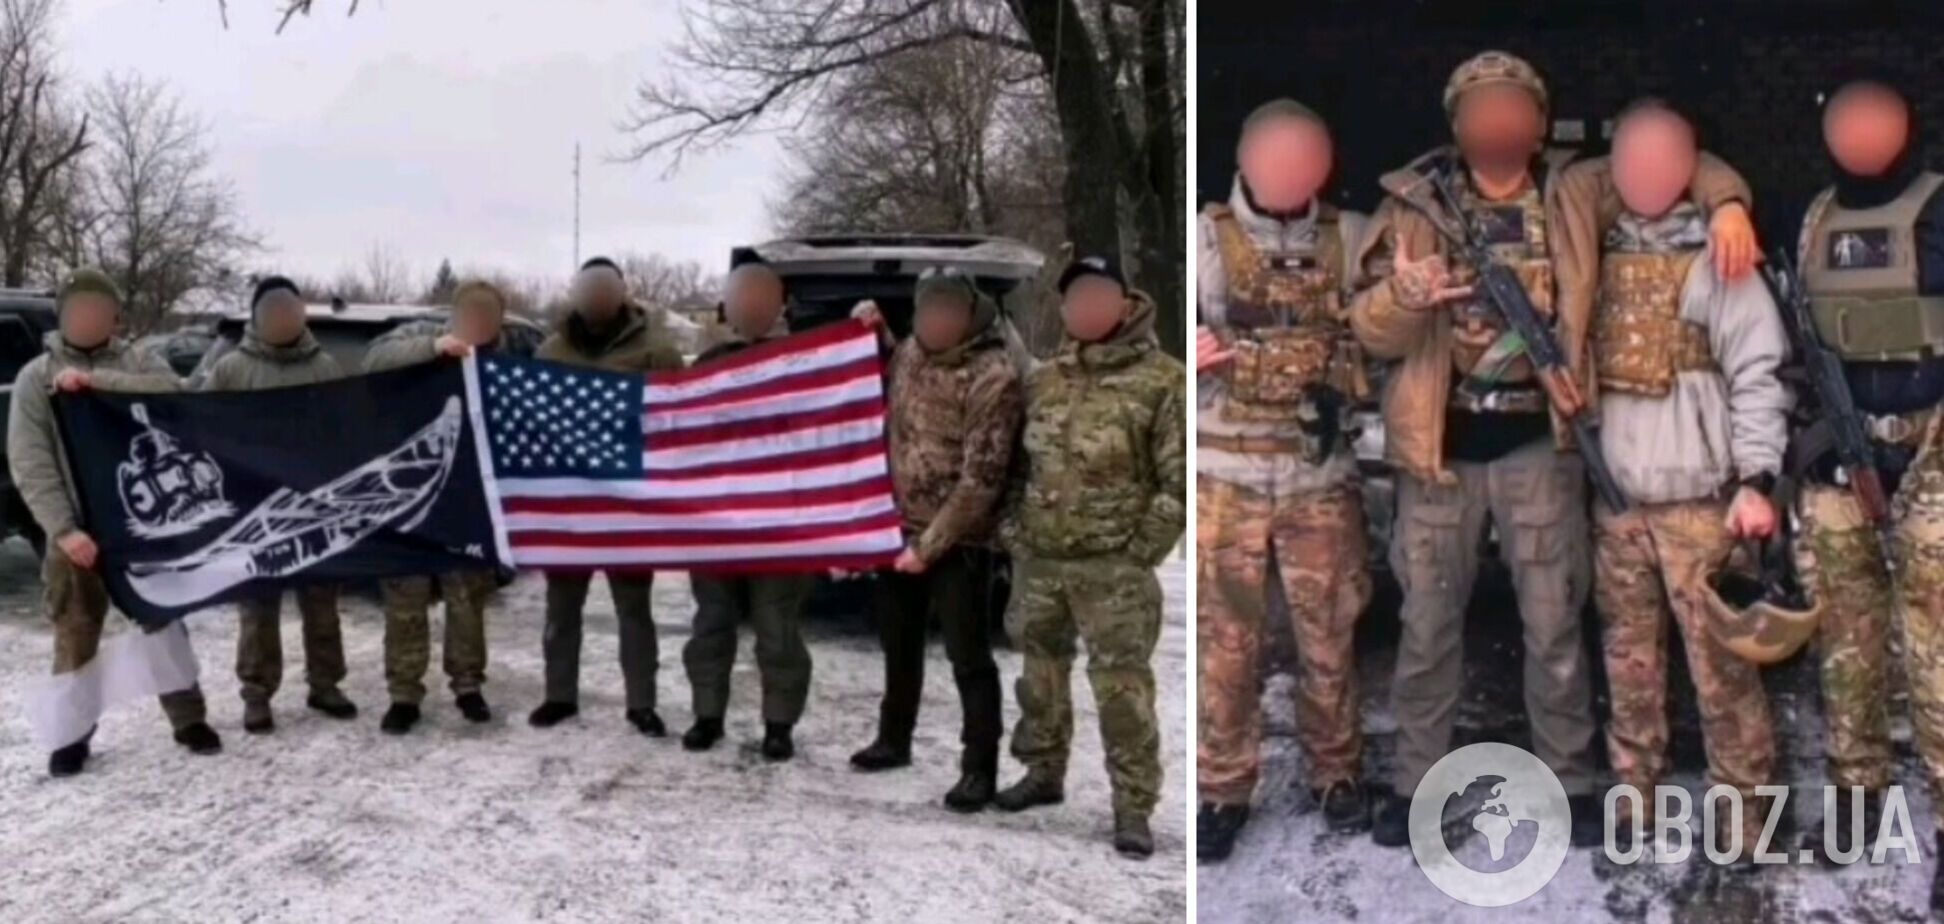 На российских площадках стали распространяться фото и видео, якобы, американских наёмников на линии фронта на Донбассе